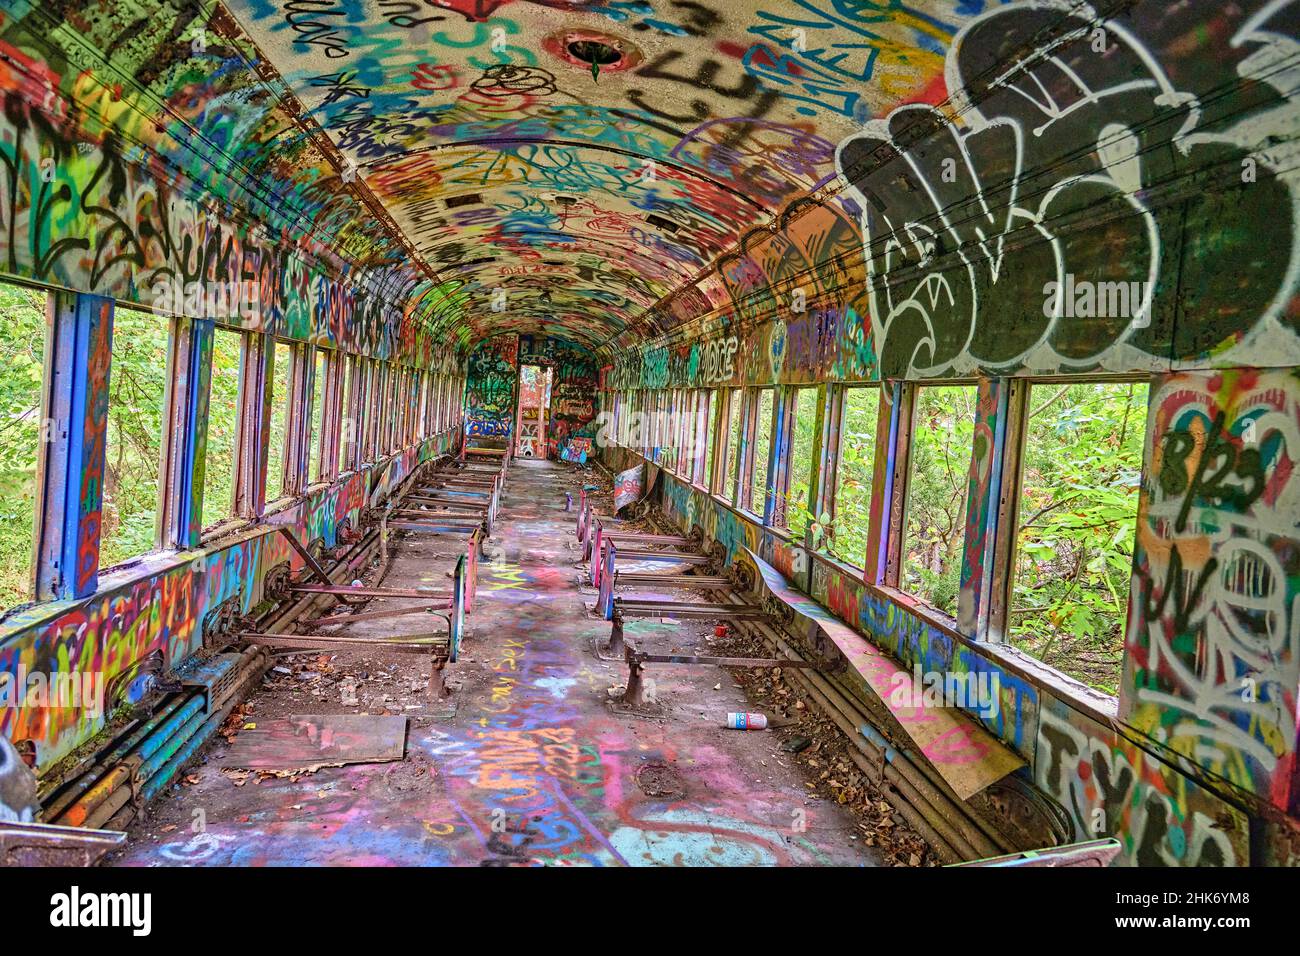 All'interno di un treno abbandonato con graffiti colorati. Preso su un angolo per effetto. Foto Stock